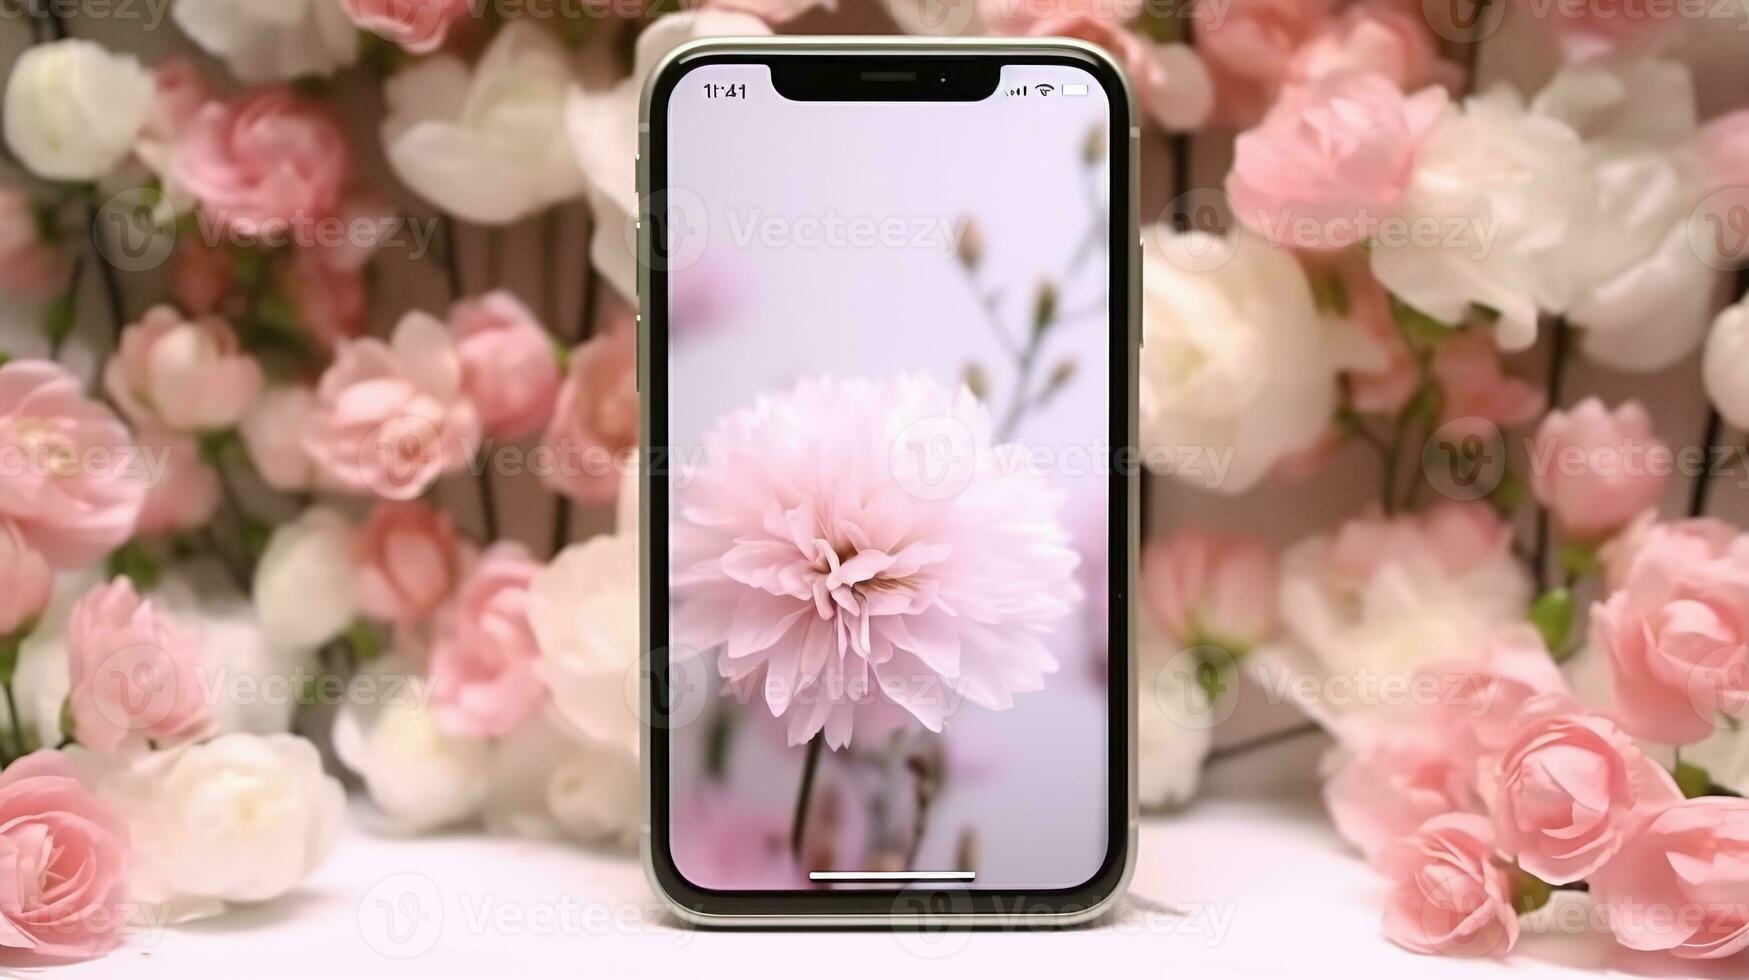 Clever Telefon spotten oben Bildschirm auf Rosa Pastell- Blumen Weiß Blumen- feminin Frühling Hintergrund foto